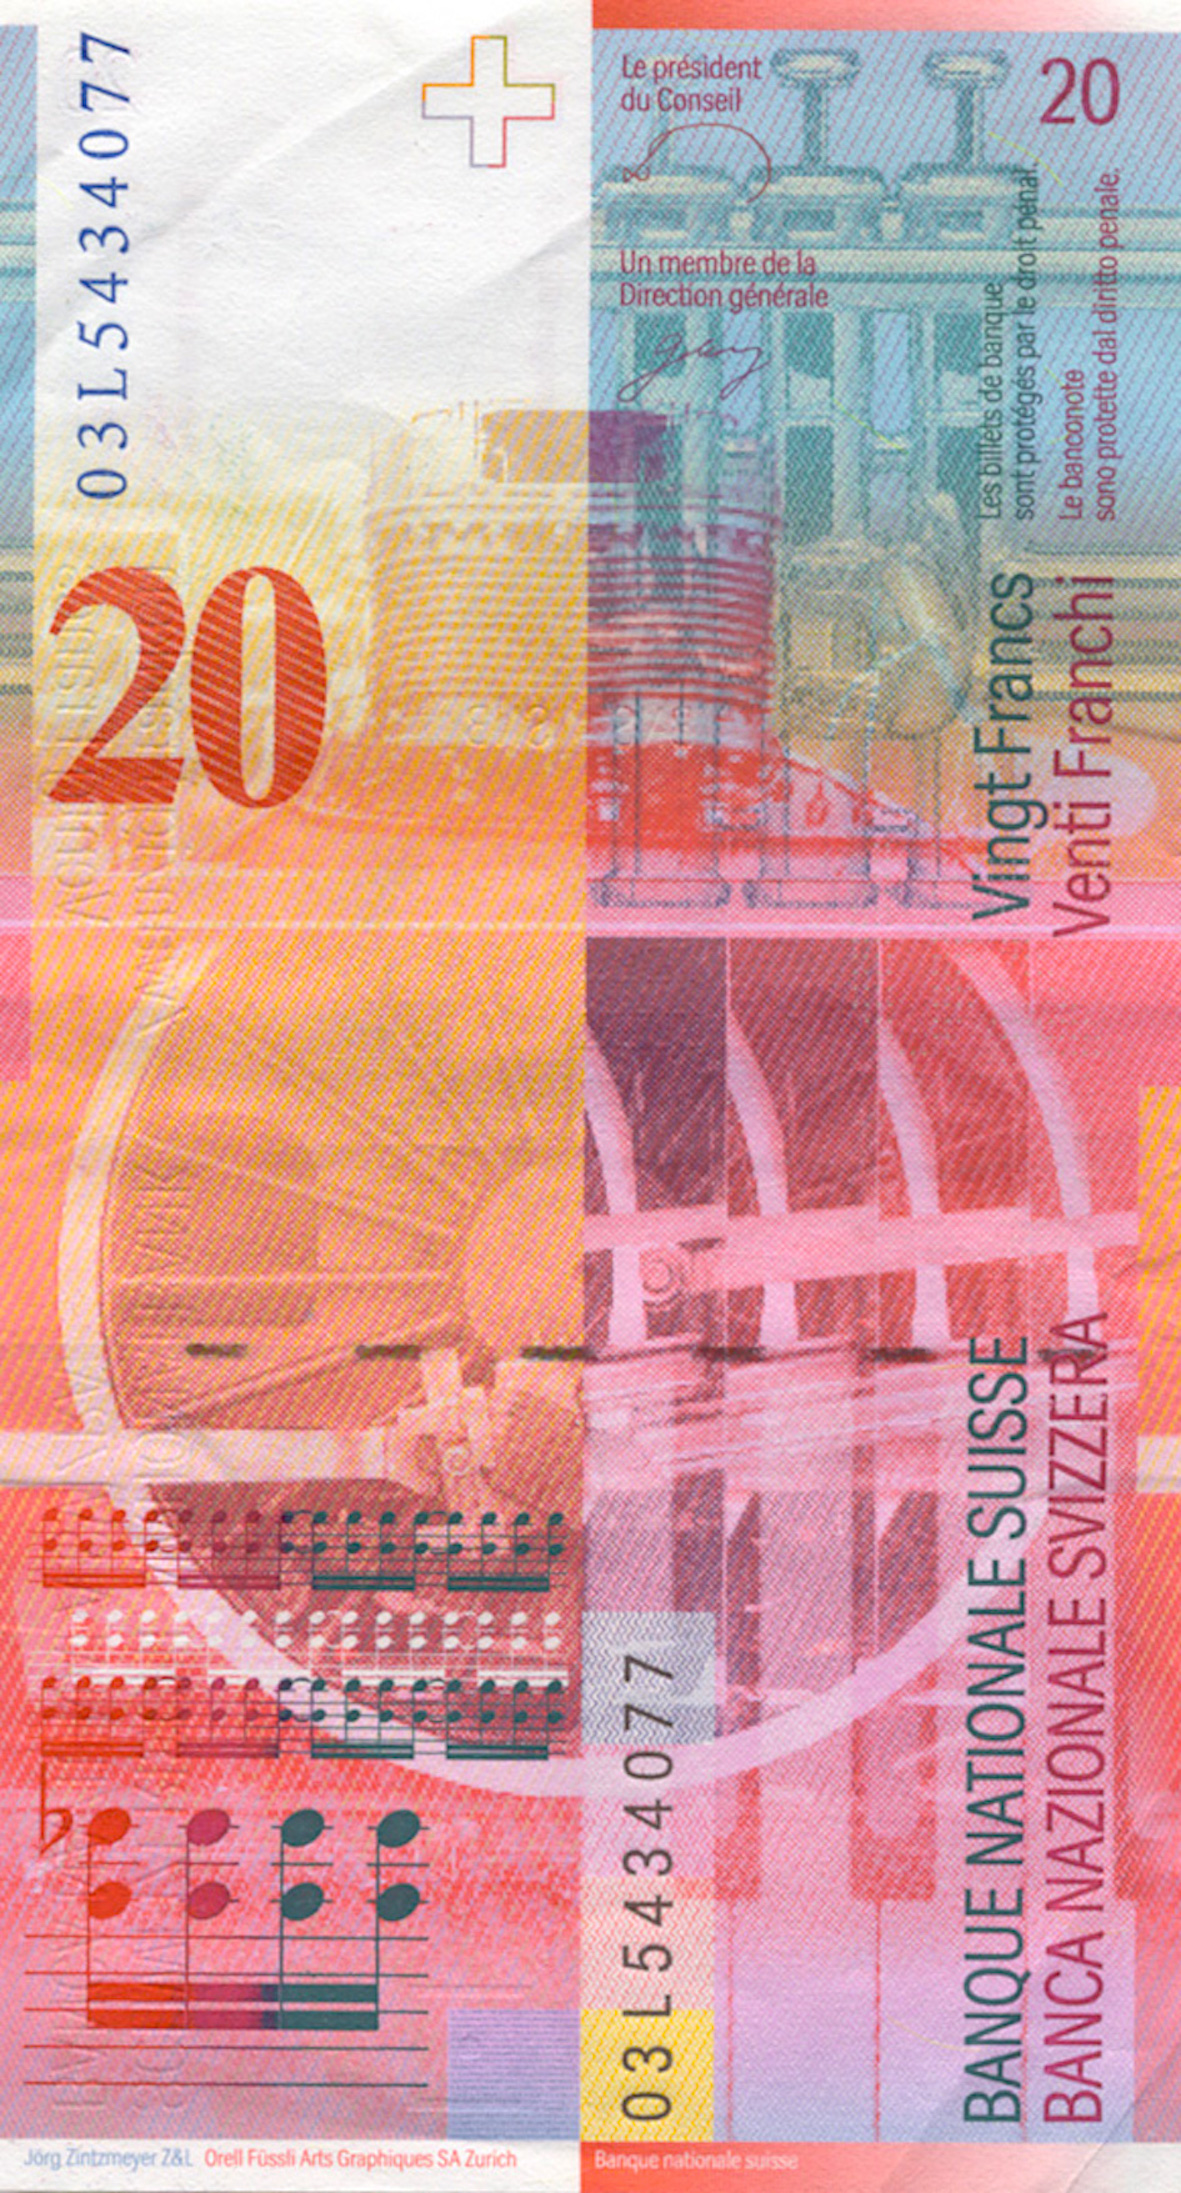 Schweizerische Eidgenossenschaft, 20 Franken, 8. Banknotenserie, in Kurs seit 1995 (reverse)